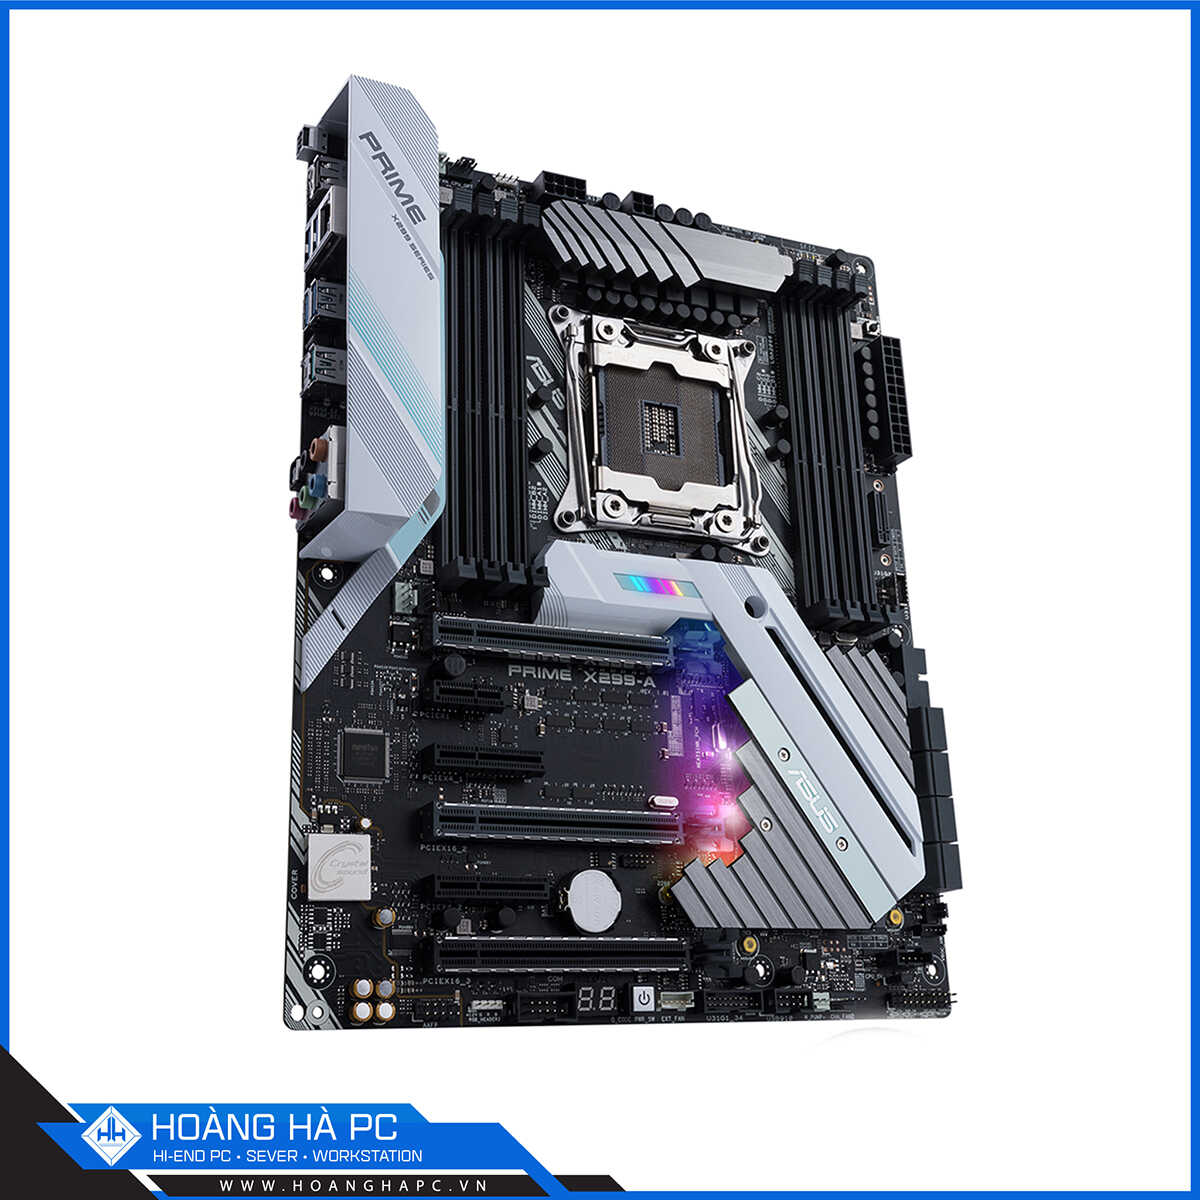 Mainboard Asus Prime X299-A (Intel X299, LGA 2066, ATX, 8 Khe Cắm Ram DDR4)